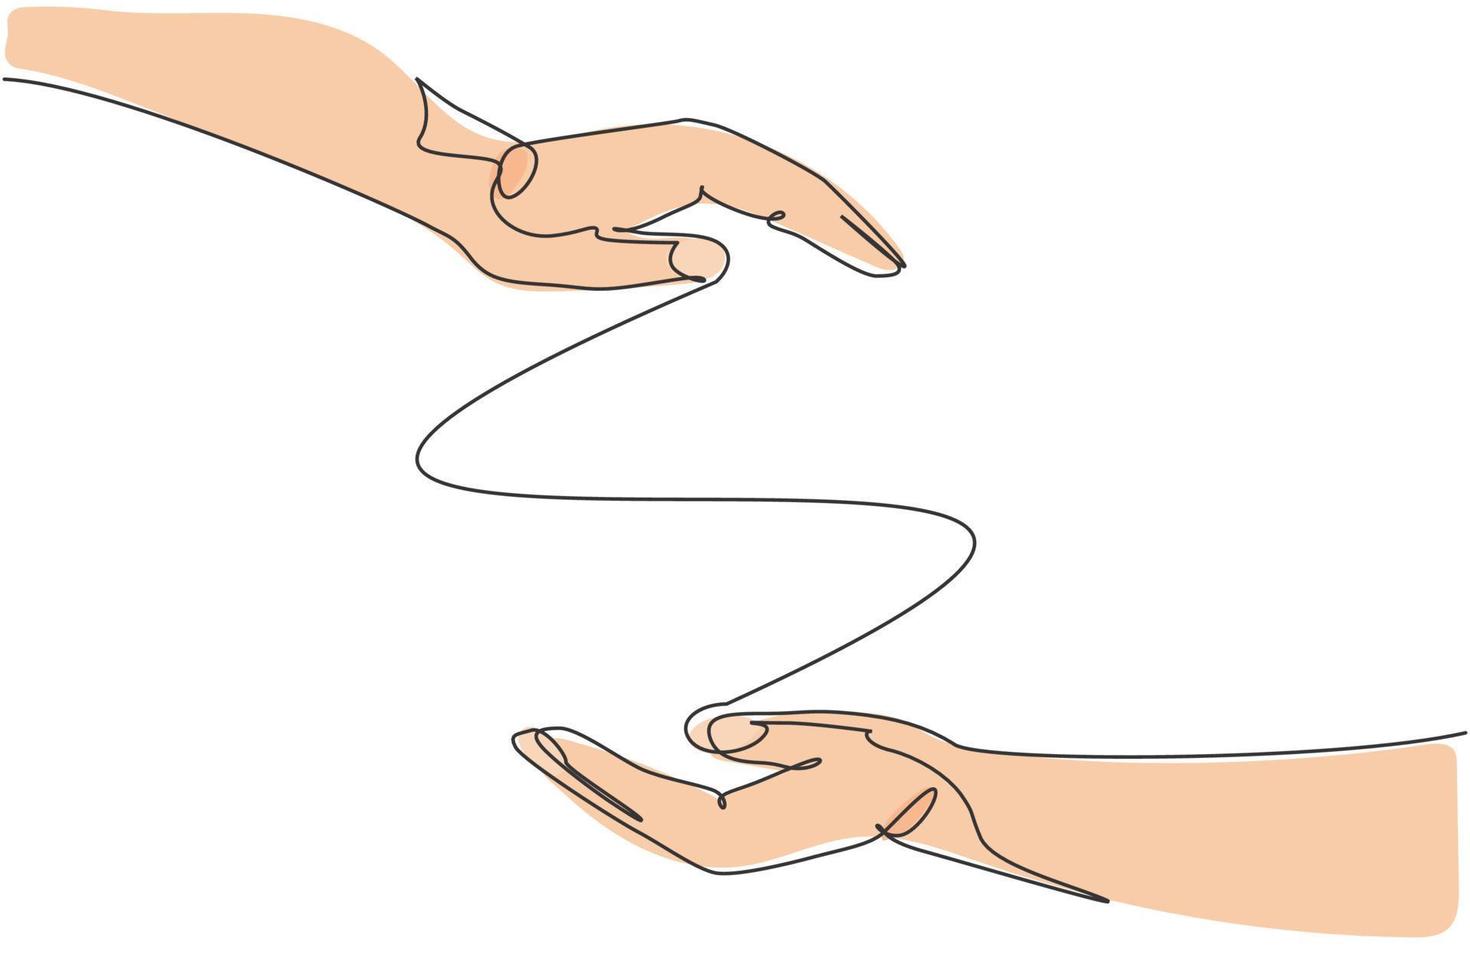 zwei Hände Schutzgeste. einzelne durchgehende Linie Hand halten Elemente Grafiksymbol. einfaches einzeiliges doodle für bildungskonzept. isolierte Vektor-Illustration minimalistisches Design auf weißem Hintergrund vektor